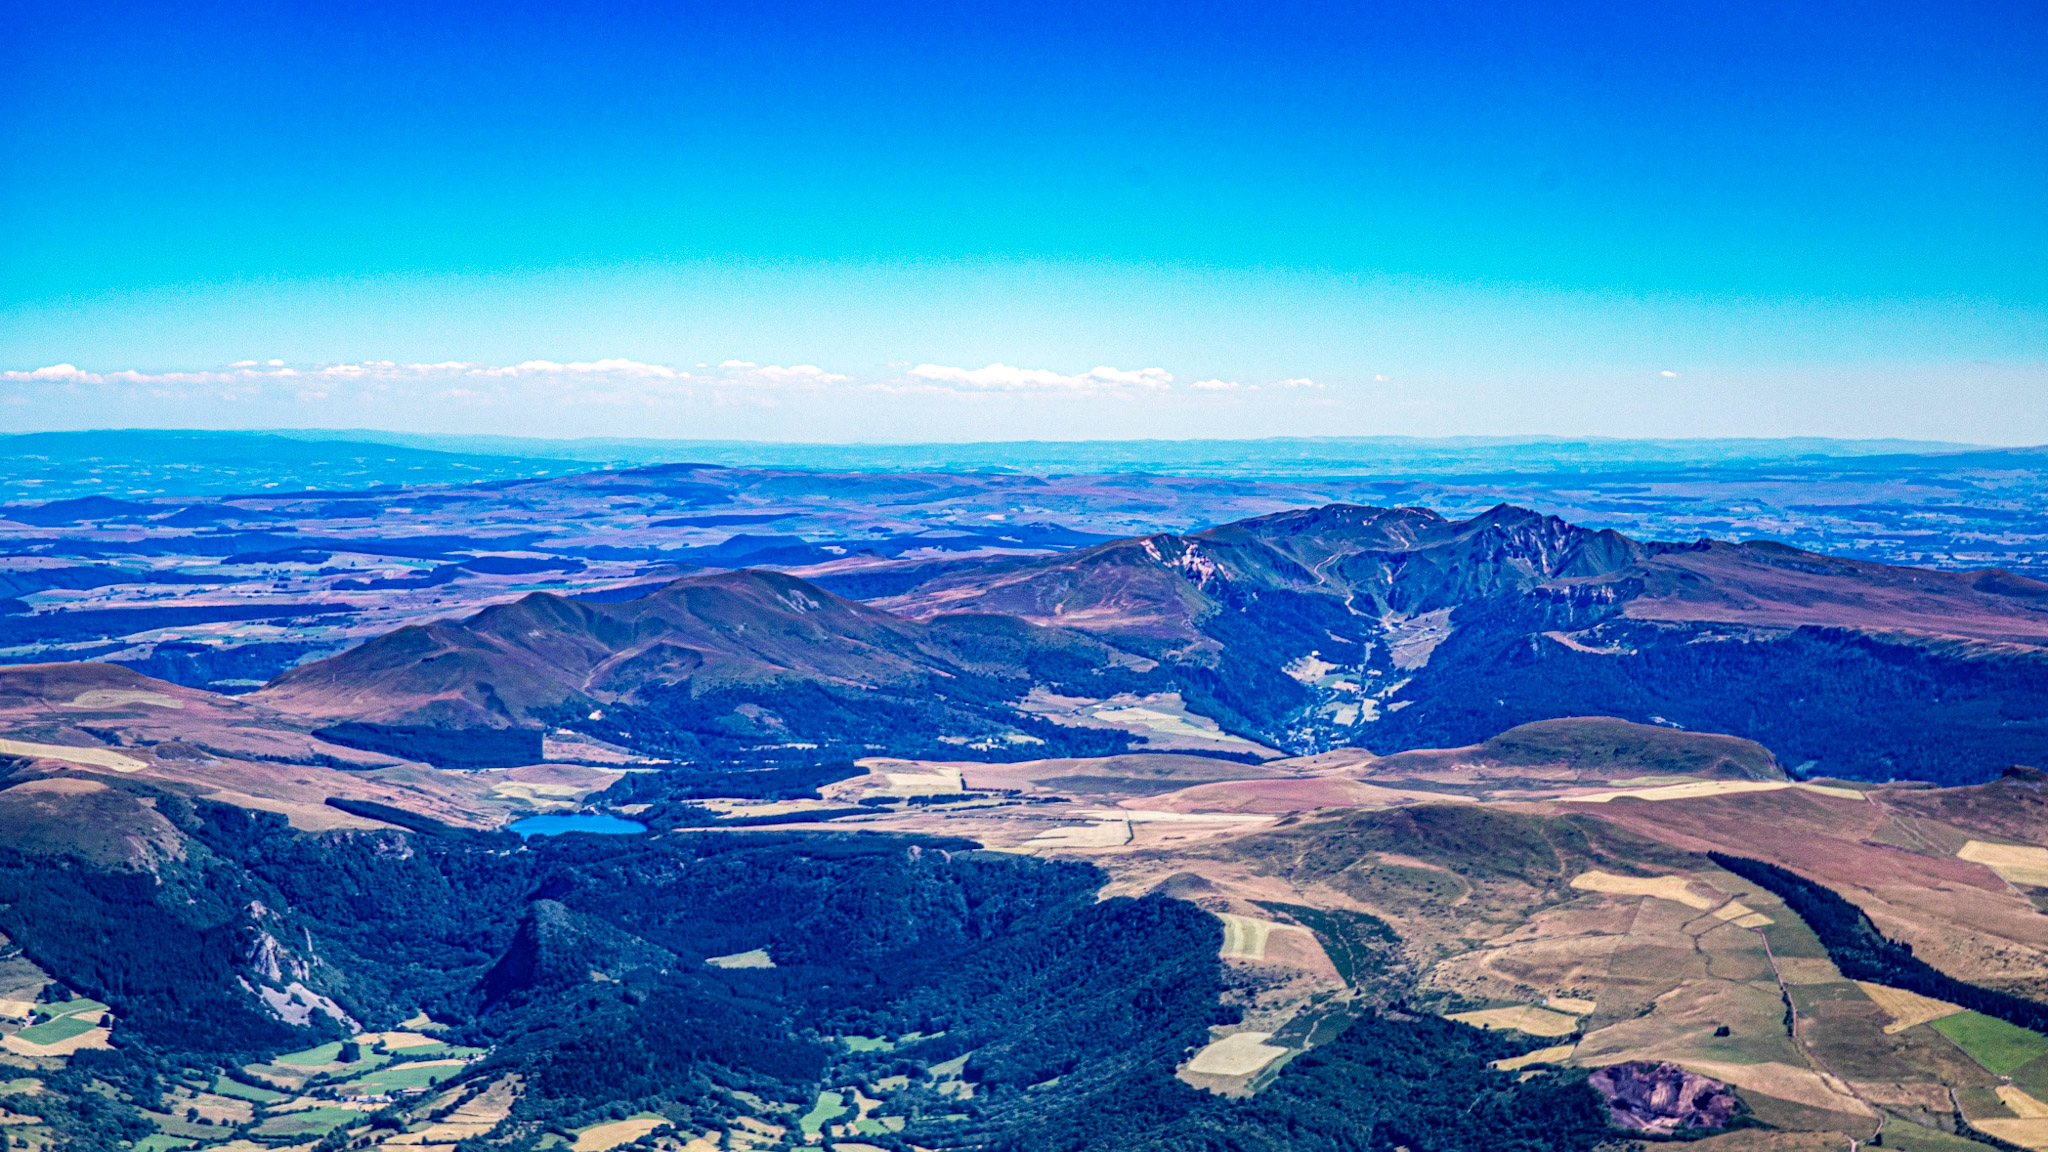 Monts Dore, panorama sur les Monts Dore: Massif du Sancy, Massif Adventif, Massif de l'Aiguillier et la Massif de la Banne d'Ordanche